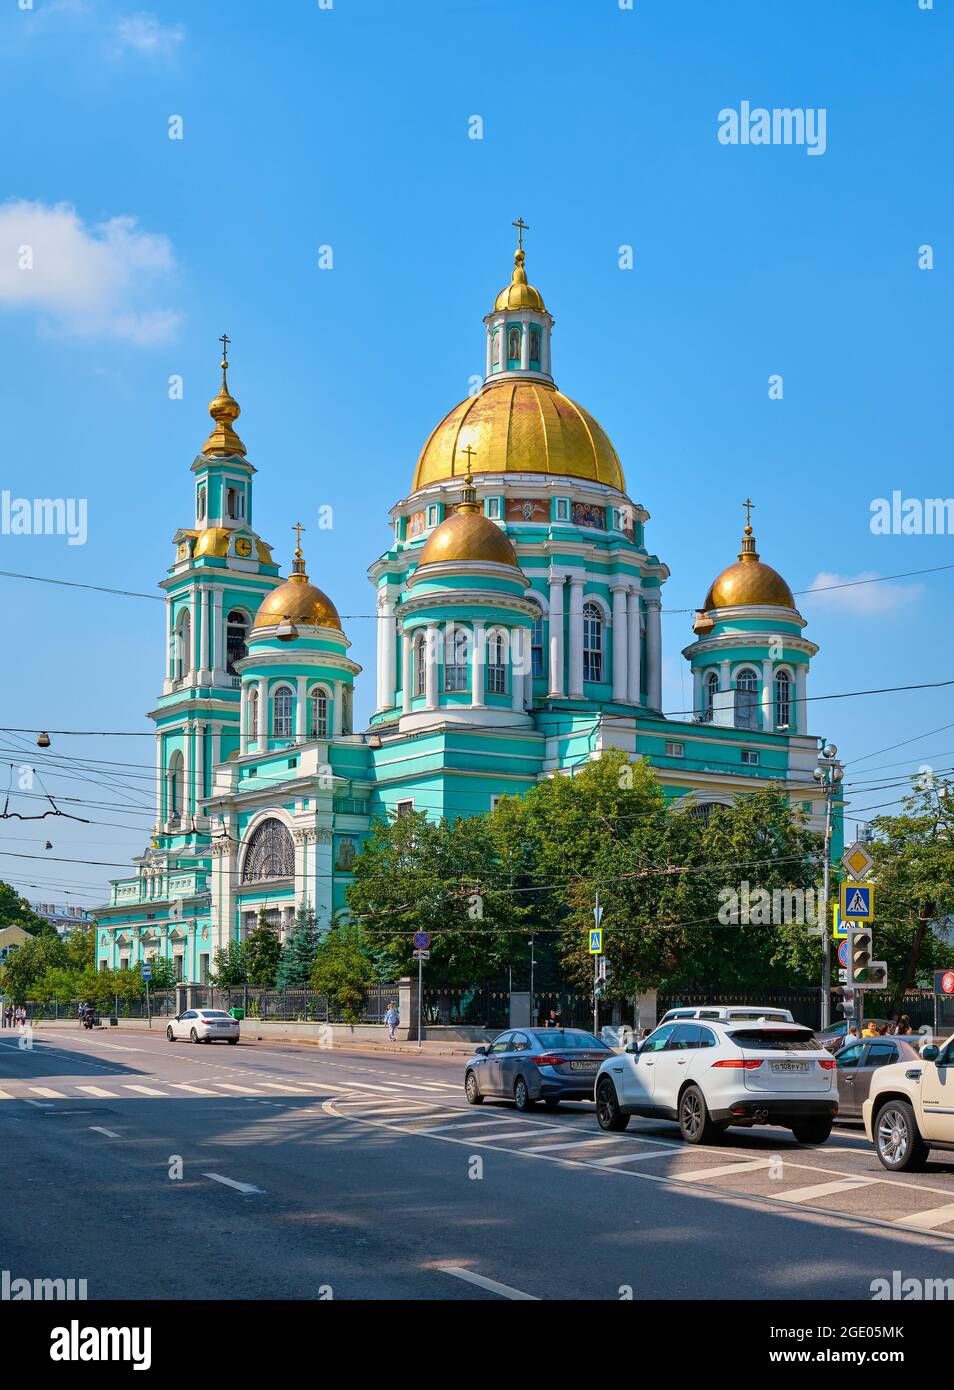 Blick auf die Epiphanie-Kathedrale in Elokhovo, eine der berühmtesten orthodoxen Kirche, erbaut 1835-1845: Moskau, Russland - 09. August 2021 Stockfoto